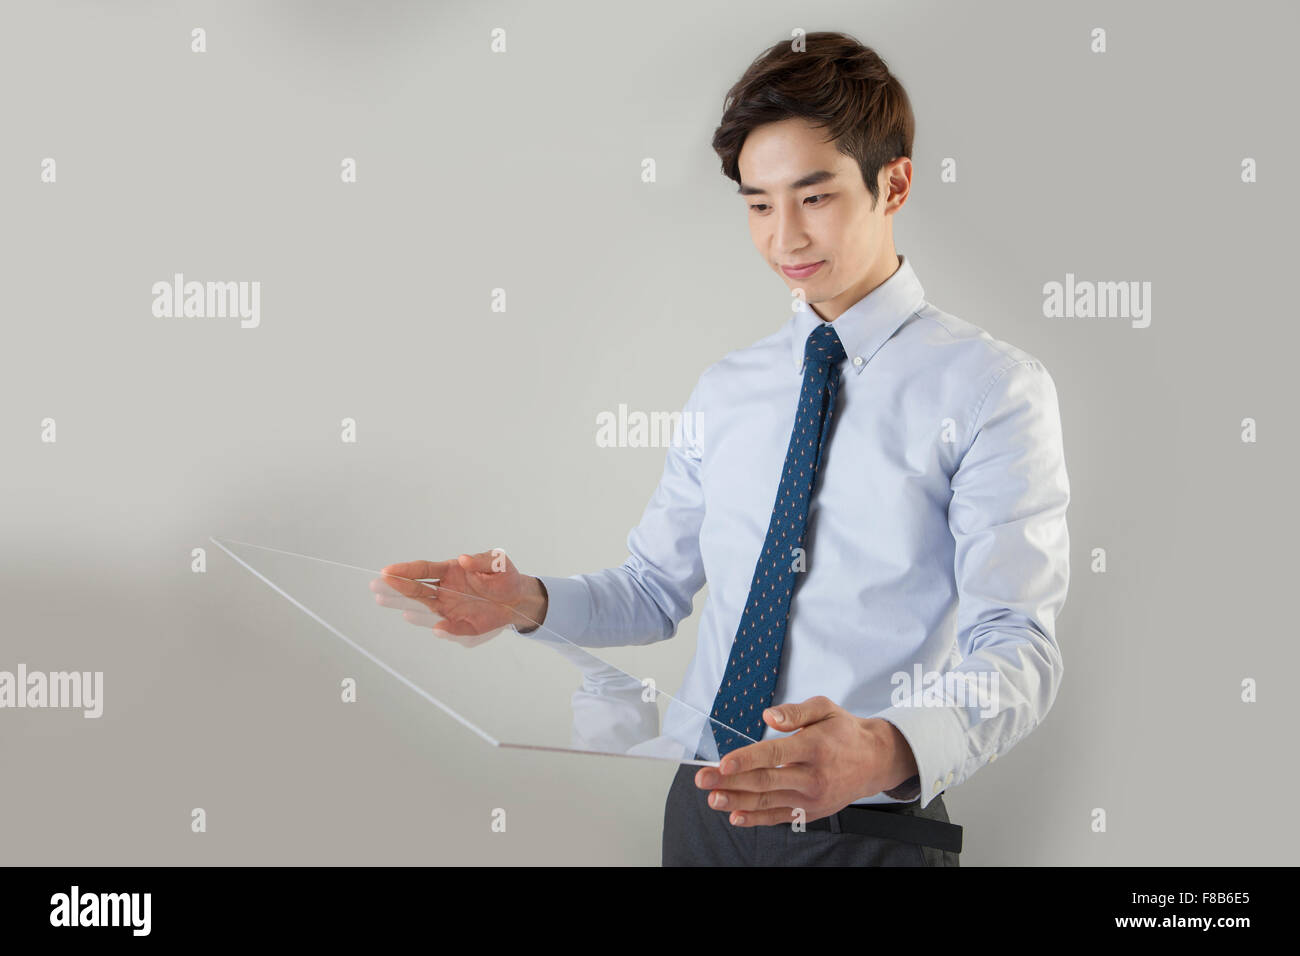 Businessman holding écran tactile et à le regarder Banque D'Images